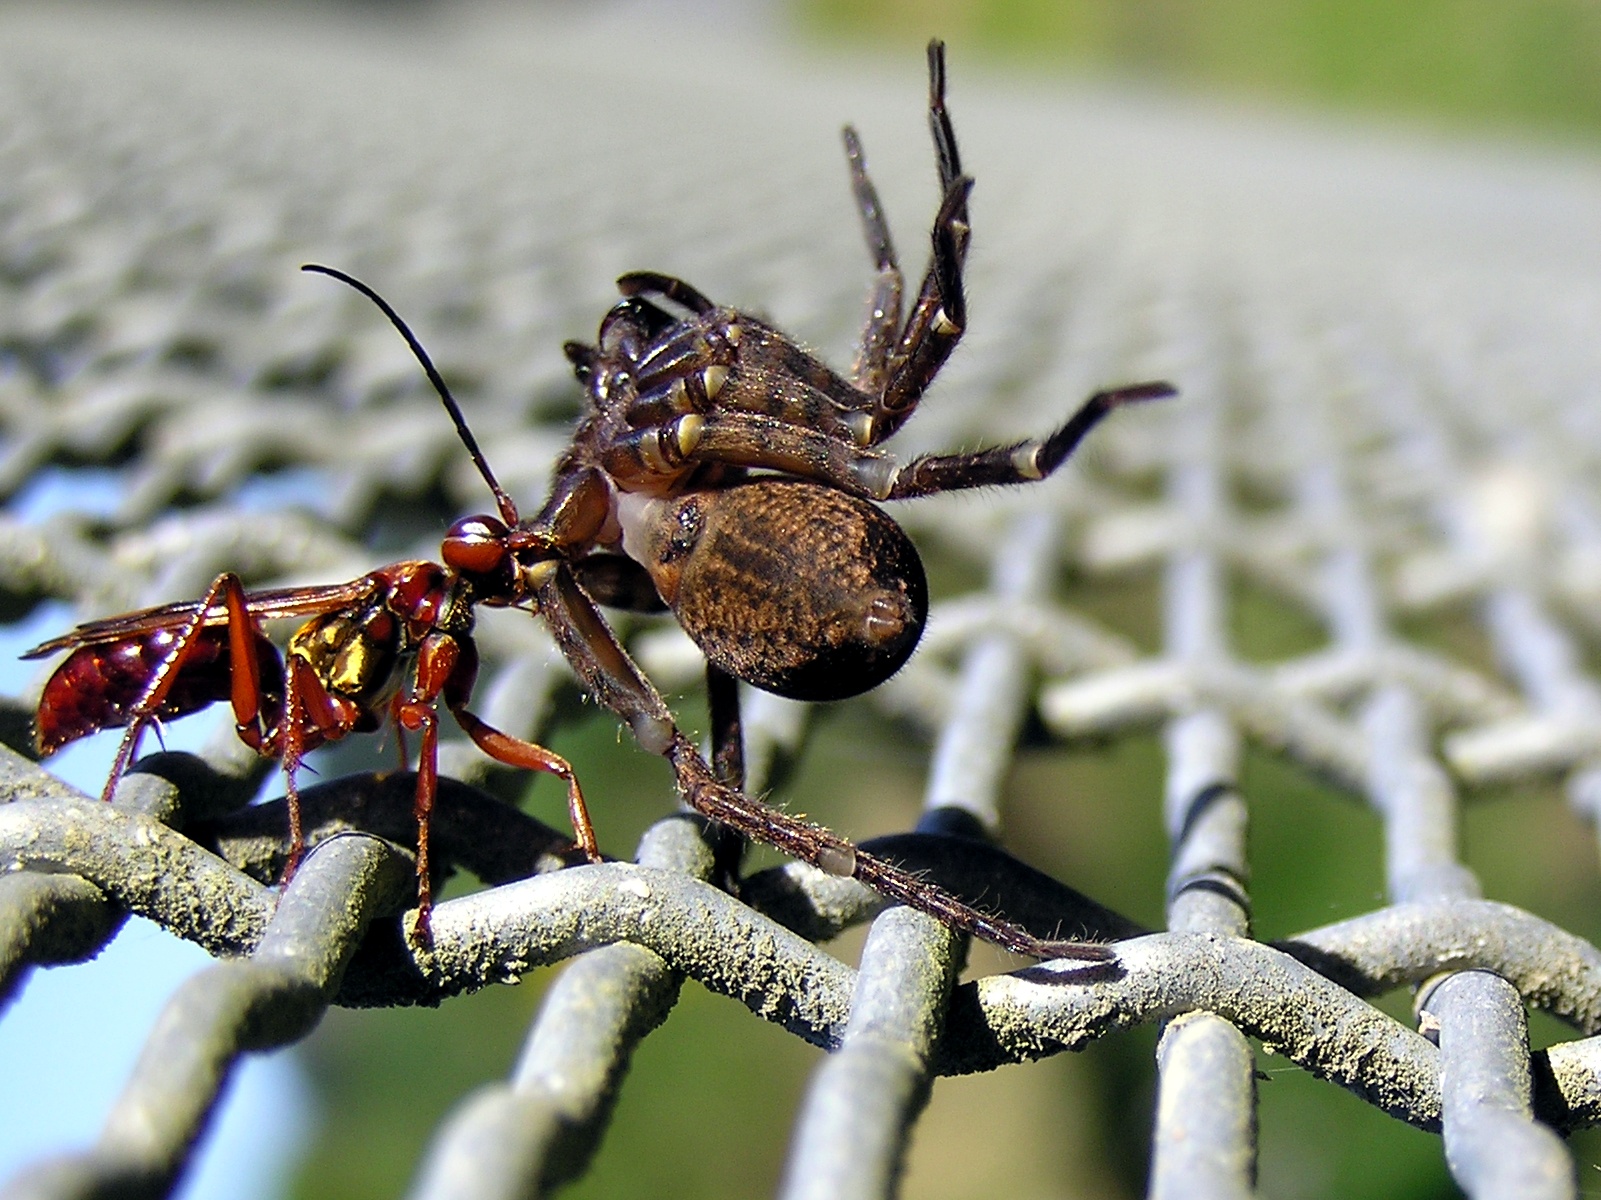 Femelle pompile (Sphictostethus nitidus) emmenant une araignée à son nid